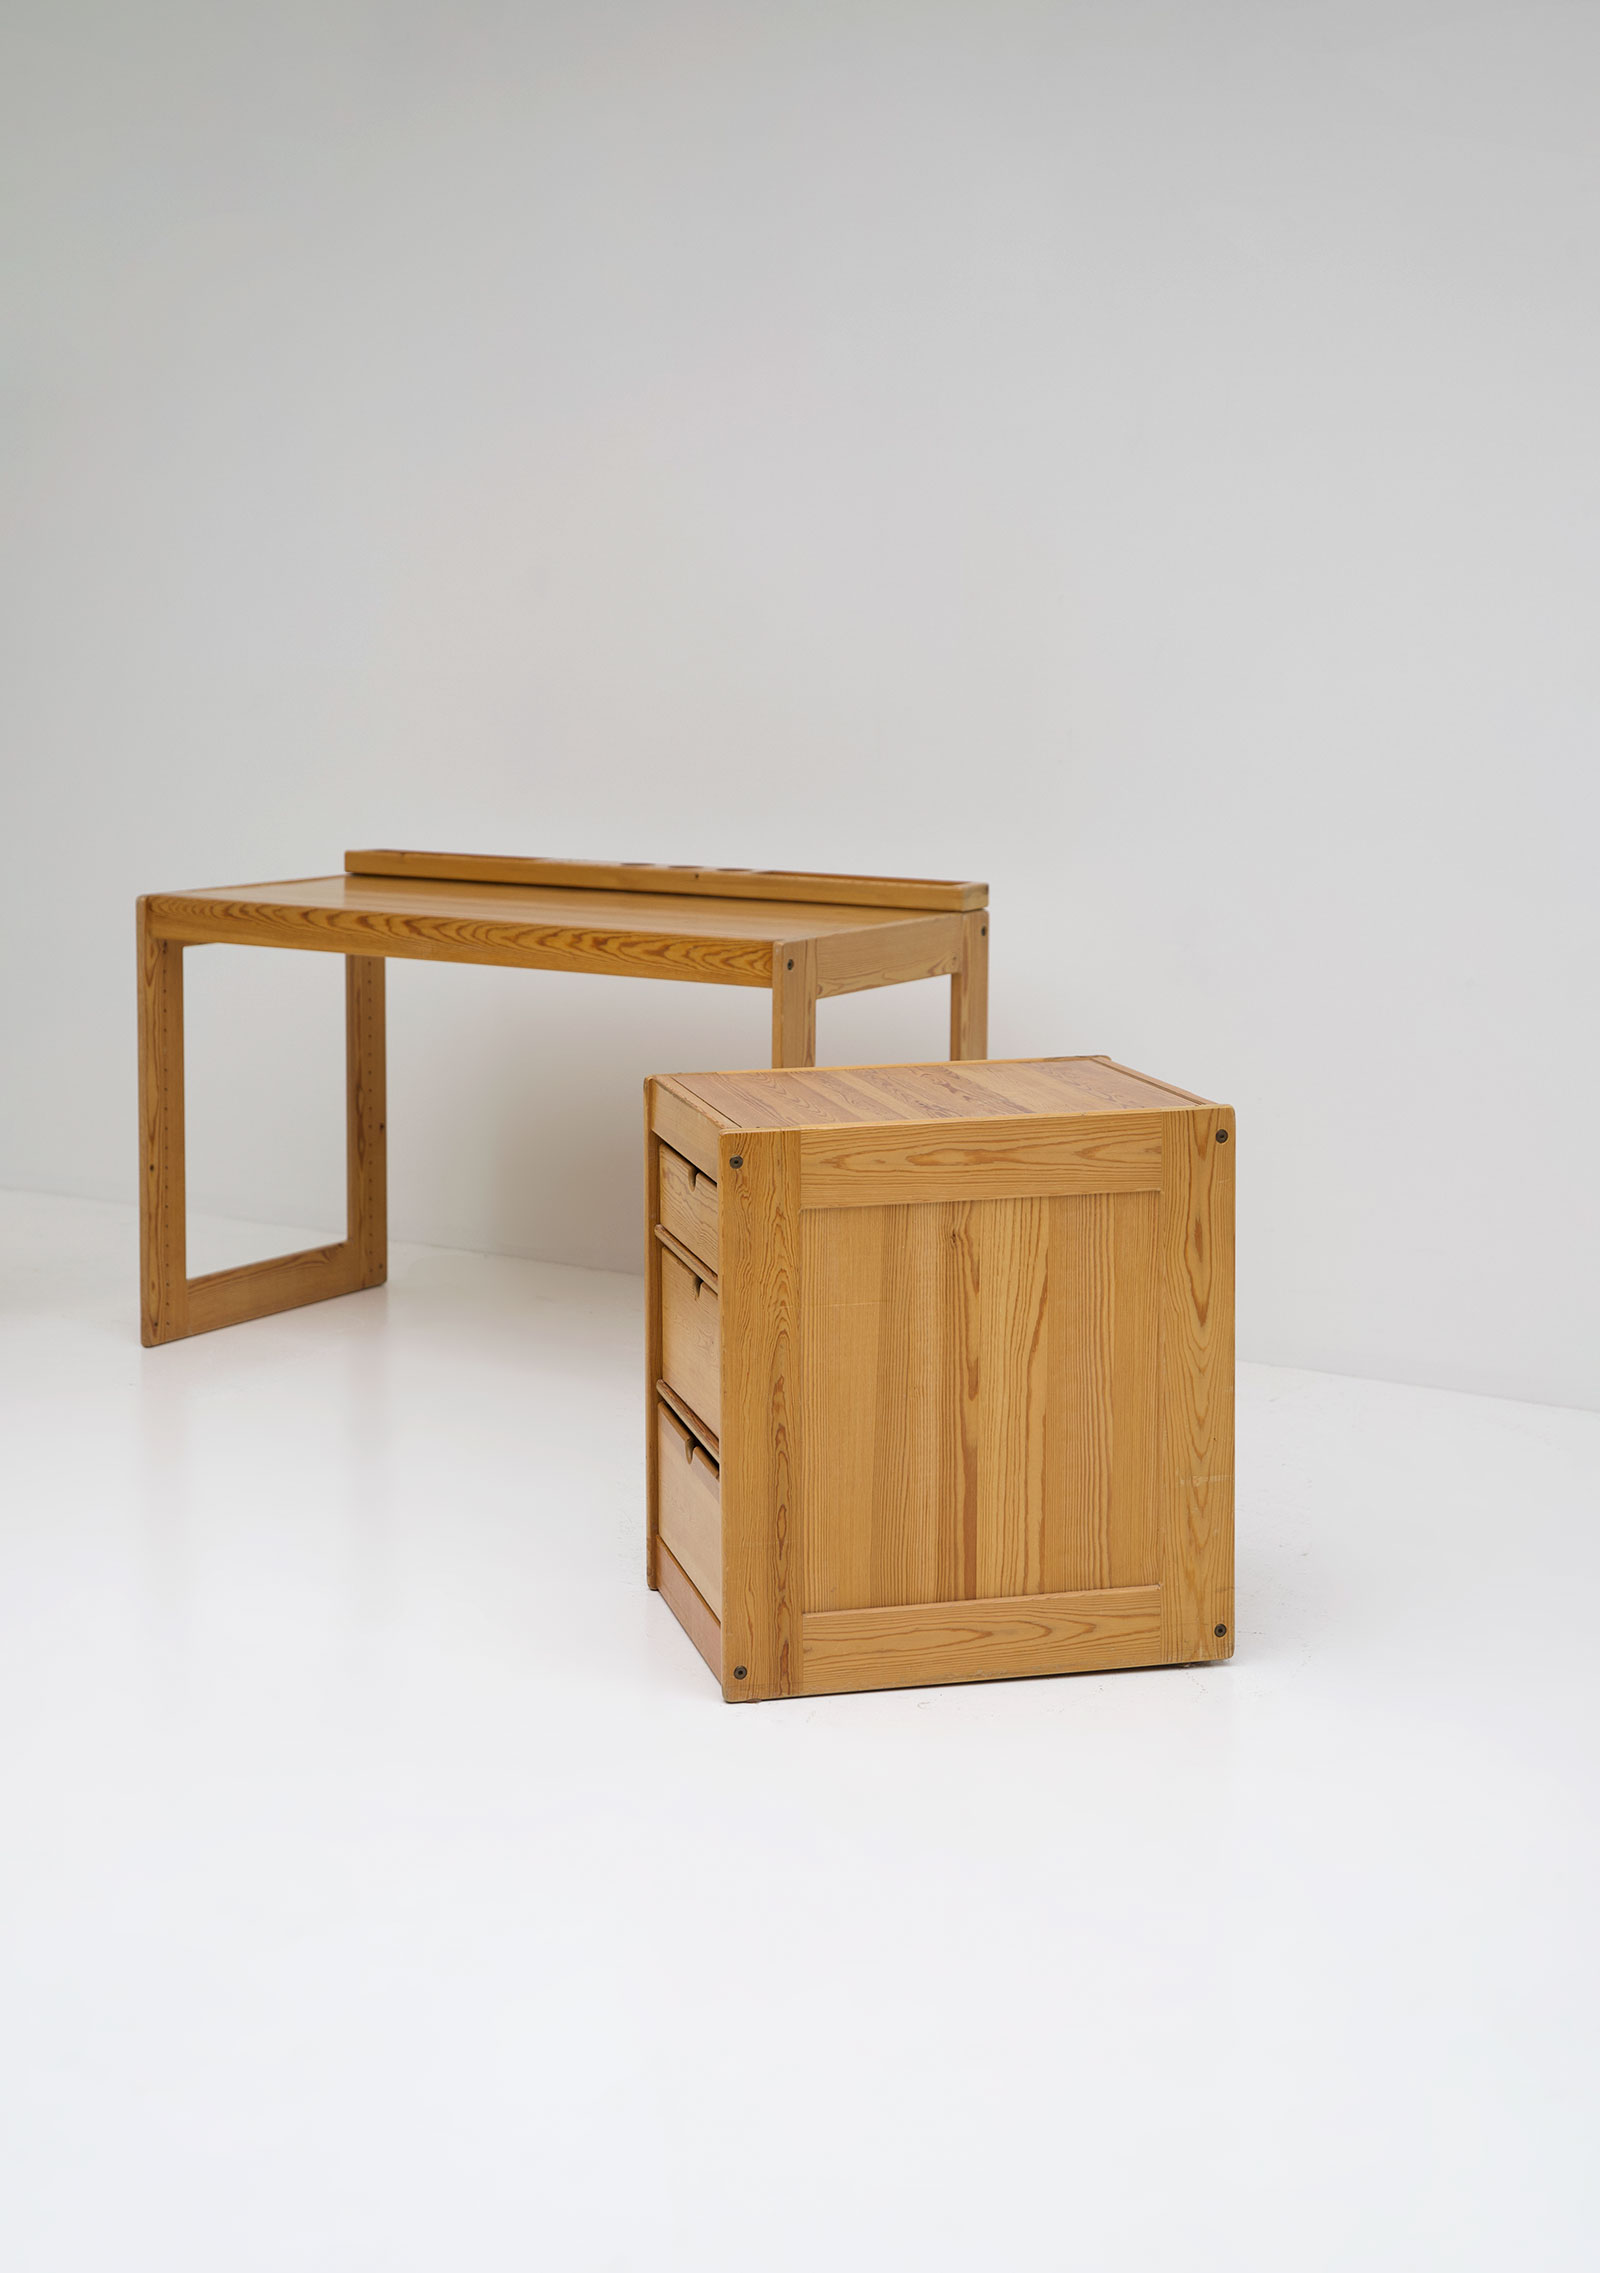 Childrens desk furniture by Pierre Grosjean setimage 2